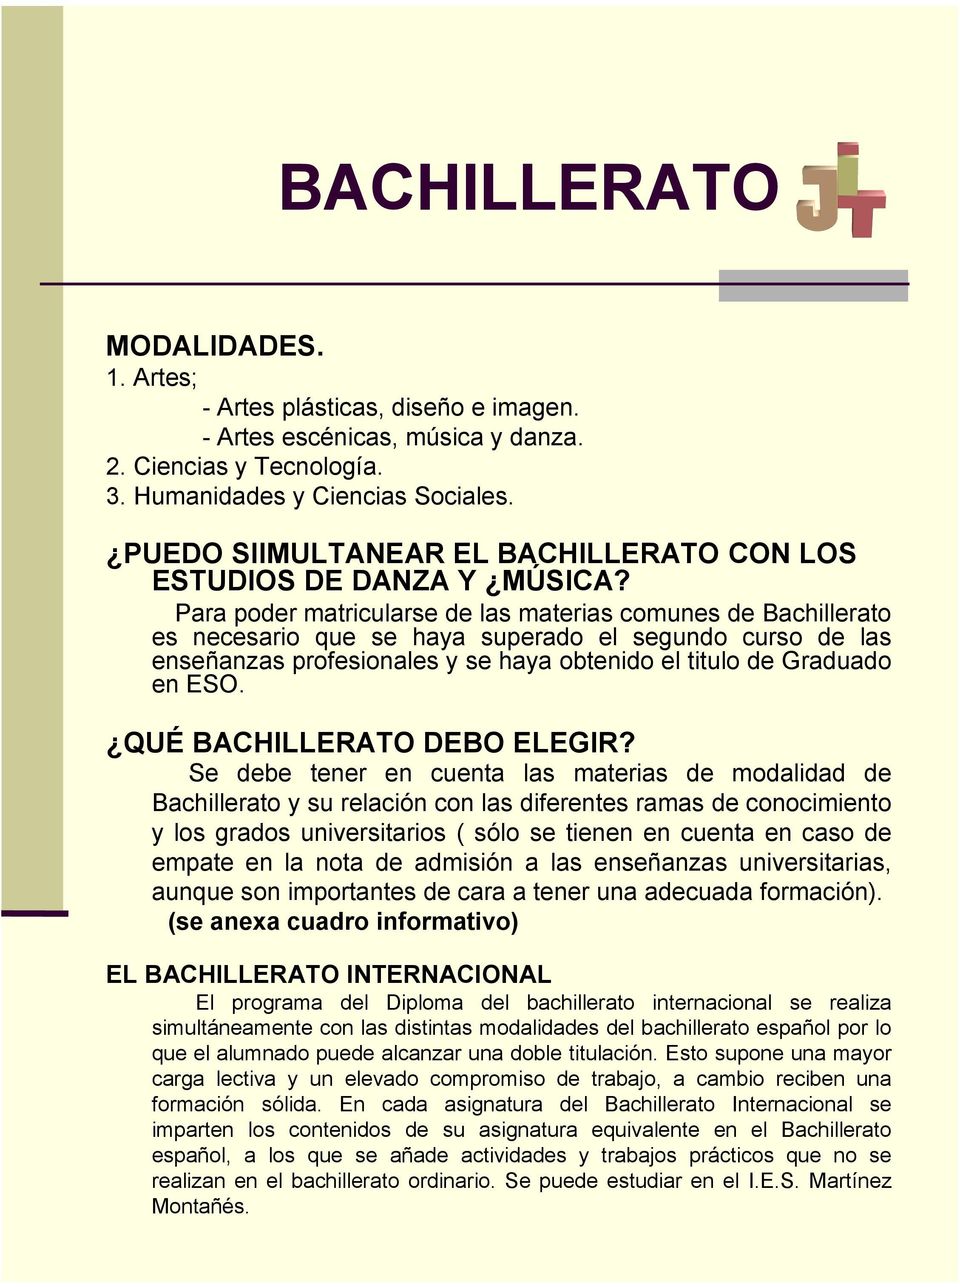 Para poder matricularse de las materias comunes de Bachillerato es necesario que se haya superado el segundo curso de las enseñanzas profesionales y se haya obtenido el titulo de Graduado en ESO.